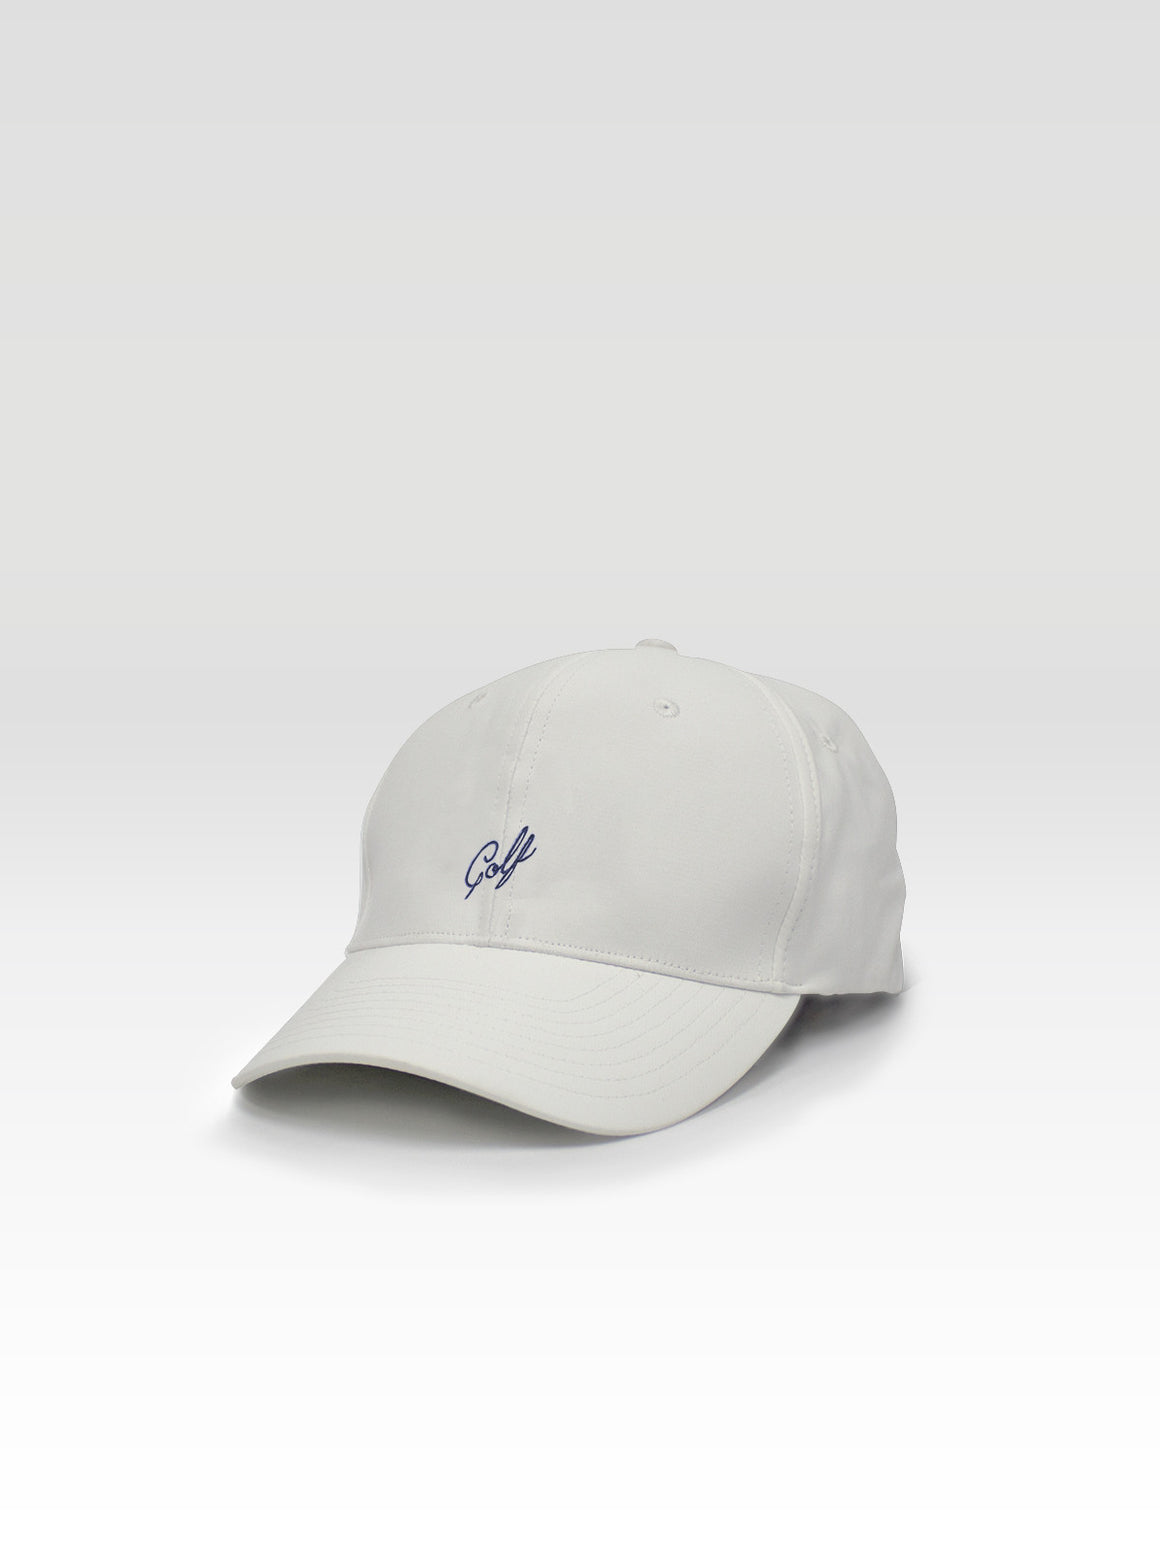 Golf Dad Hat - White (Navy)